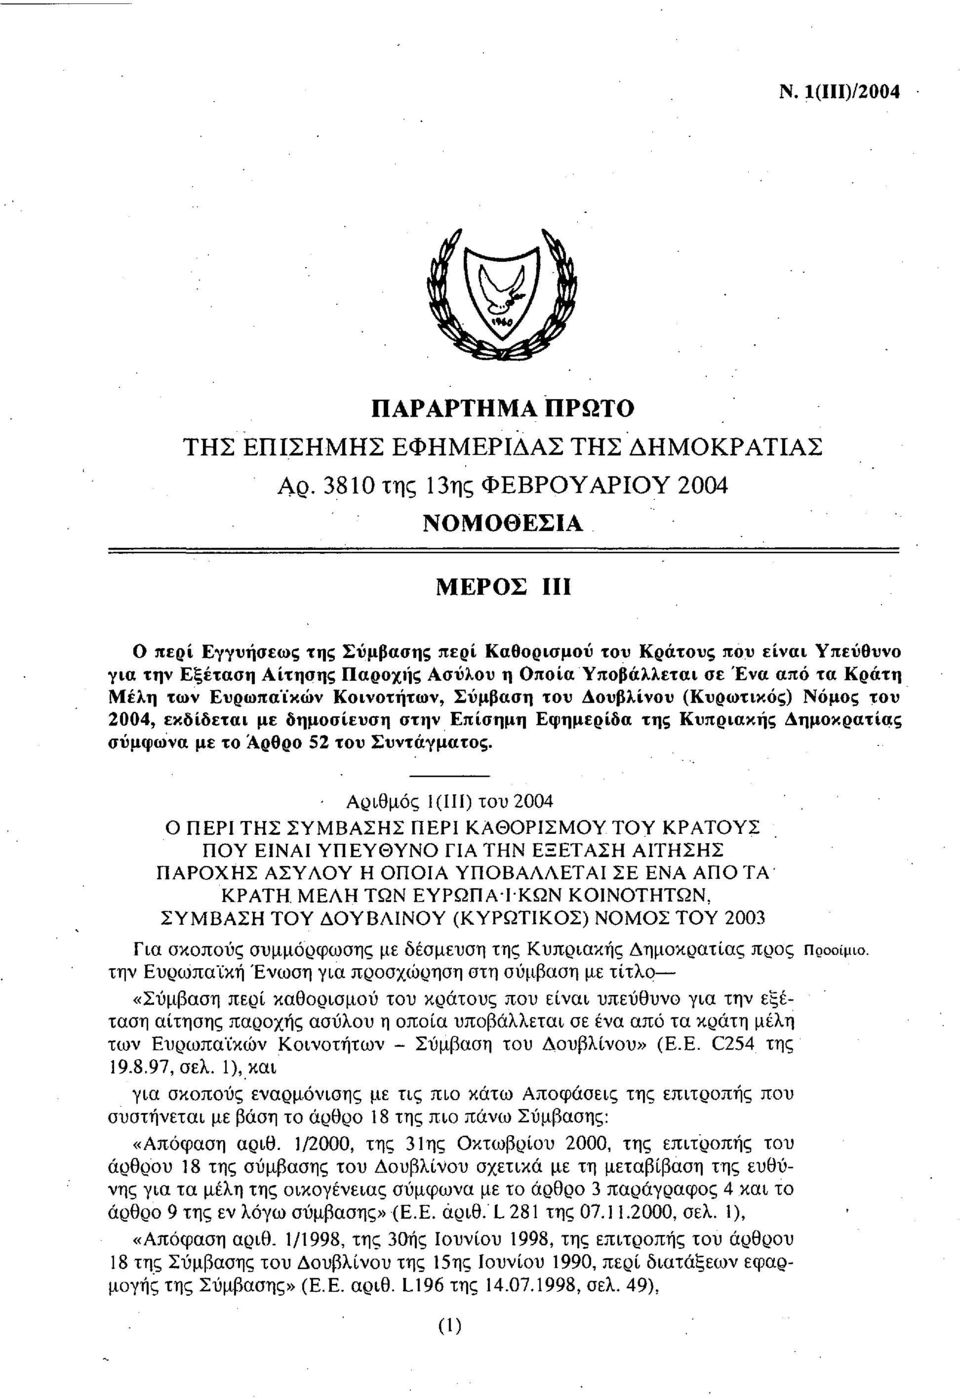 τα Κράτη Μέλη των Ευρωπαϊκών Κοινοτήτων, Σύμβαση του Δουβλίνου (Κυρωτικός) Νόμος του 2004, εκδίδεται με δημοσίευση στην Επίσημη Εφημερίδα της Κυπριακής Δημοκρατίας σύμφωνα με το Αρθρο 52 του